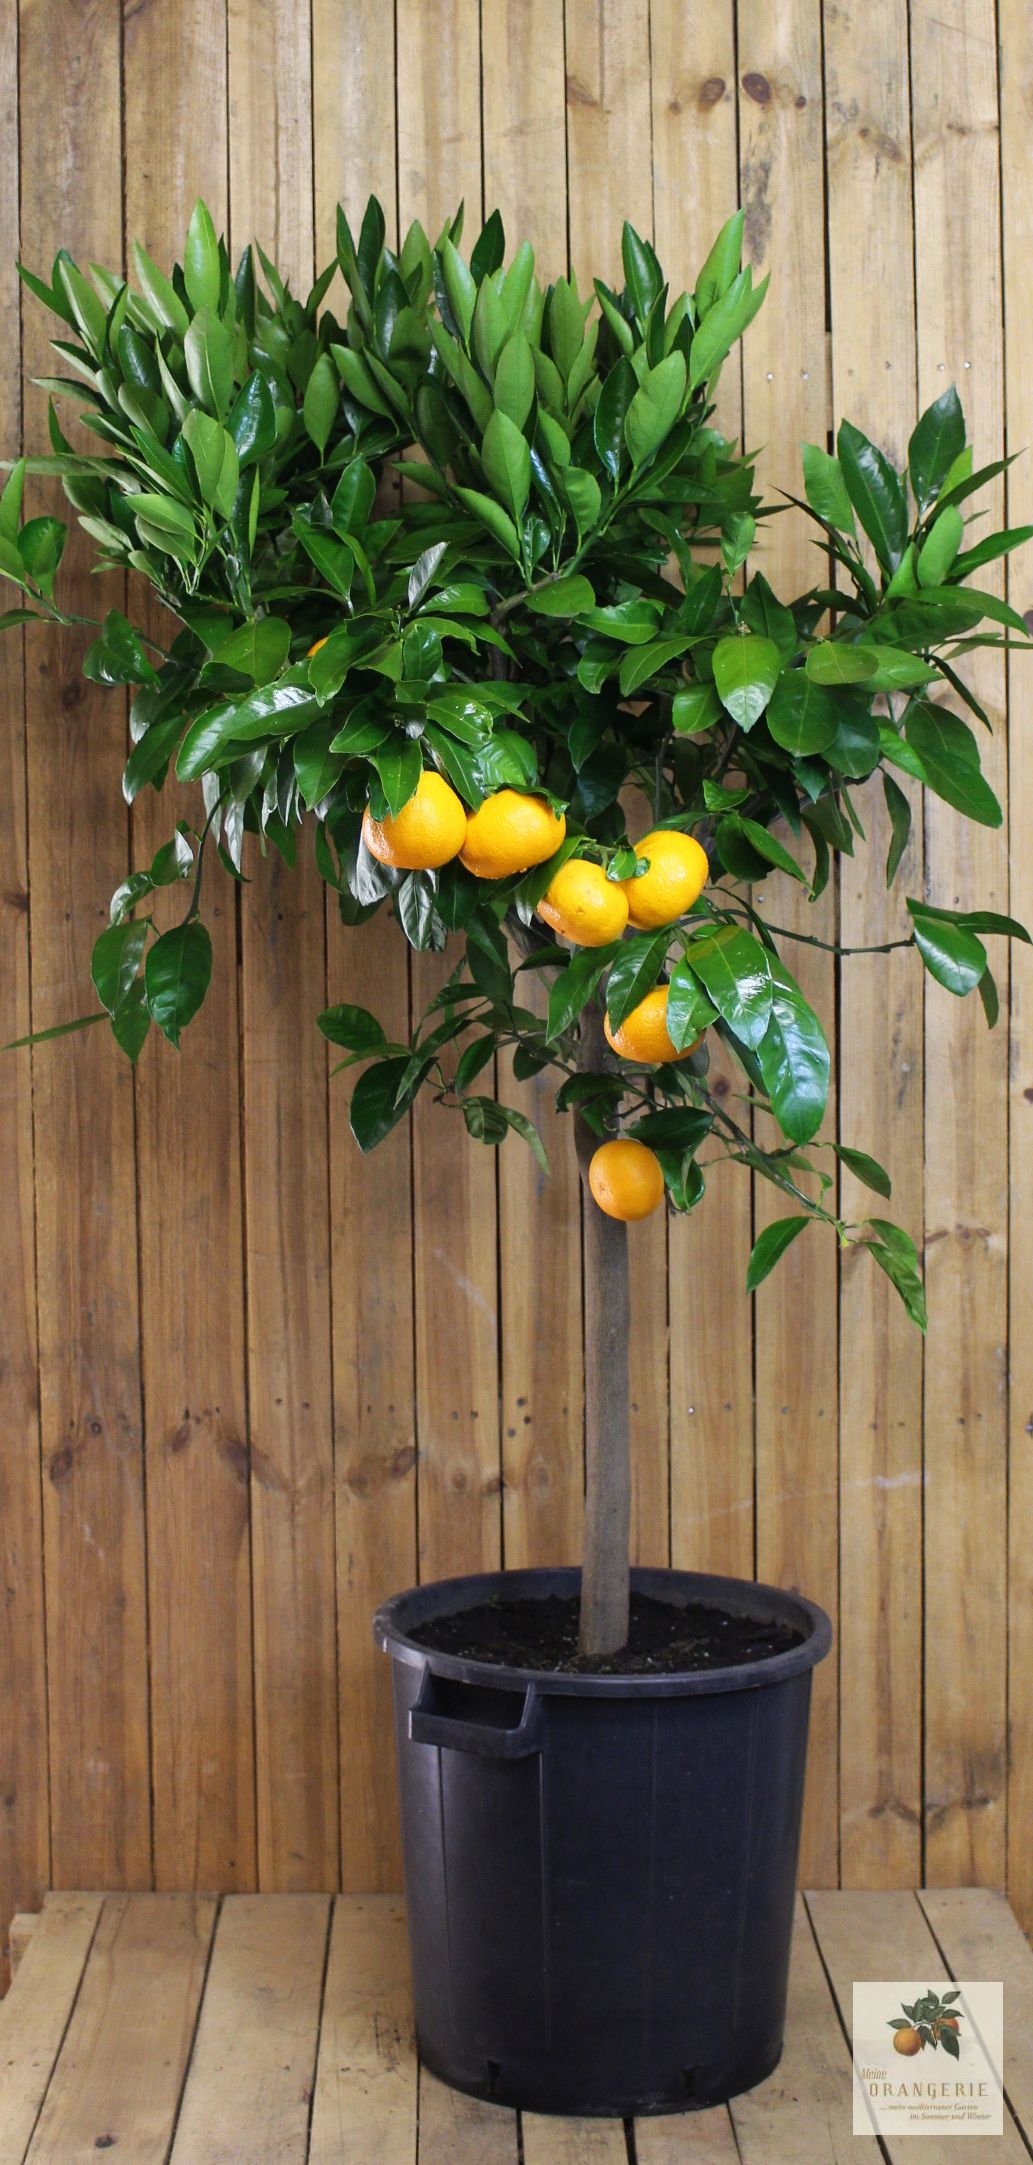 Clementinenbaum [Molto Grande] - Citrus clementina / Citrus reticulata 'Clementine'